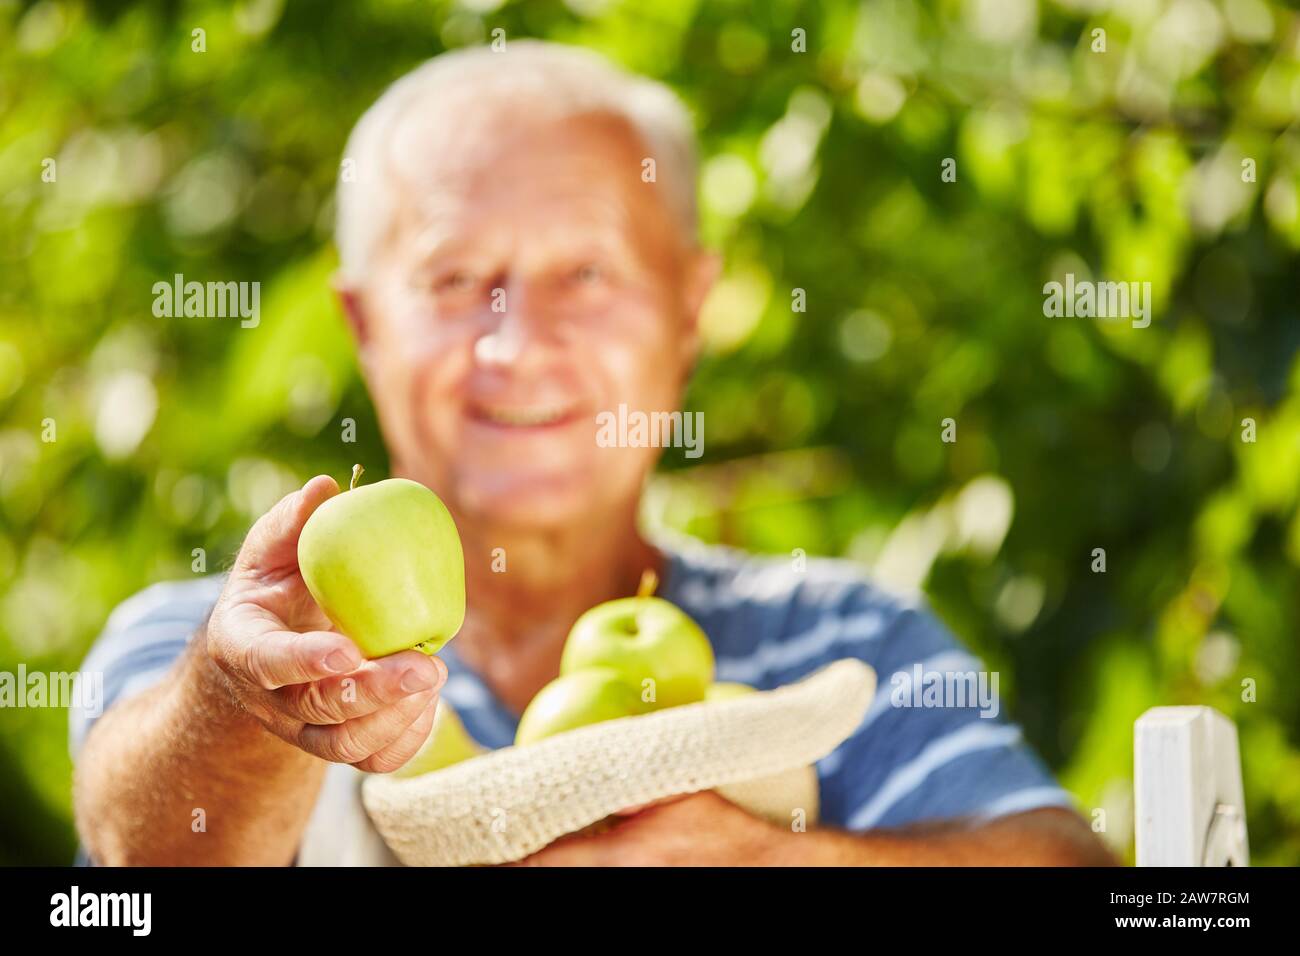 Der Senior erntet einen apfel mit einem goldenen, köstlichen apfel in der Hand Stockfoto